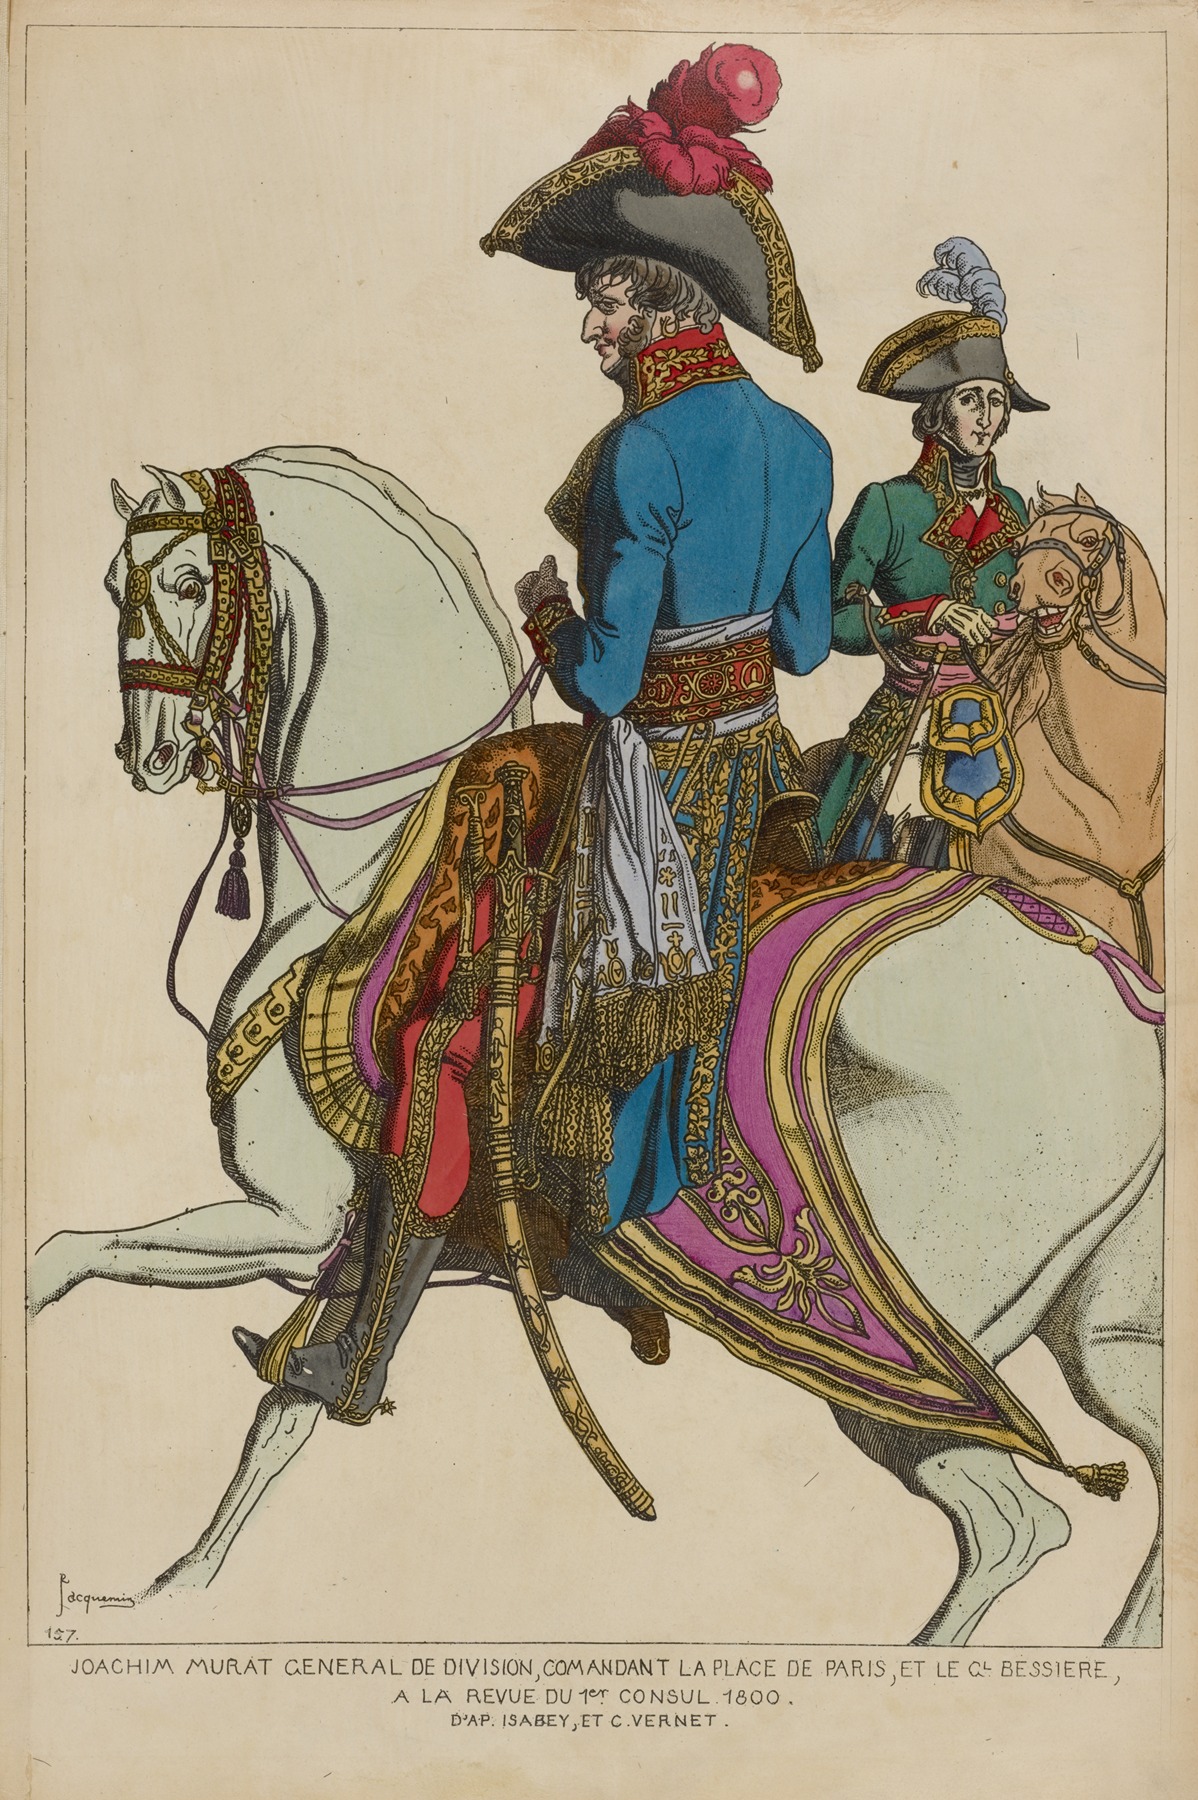 Raphaël Jacquemin - Joachim Murat general de division, comandant la place de Paris, et le Gl. Bessiere, a la revue du 1er consul 1800